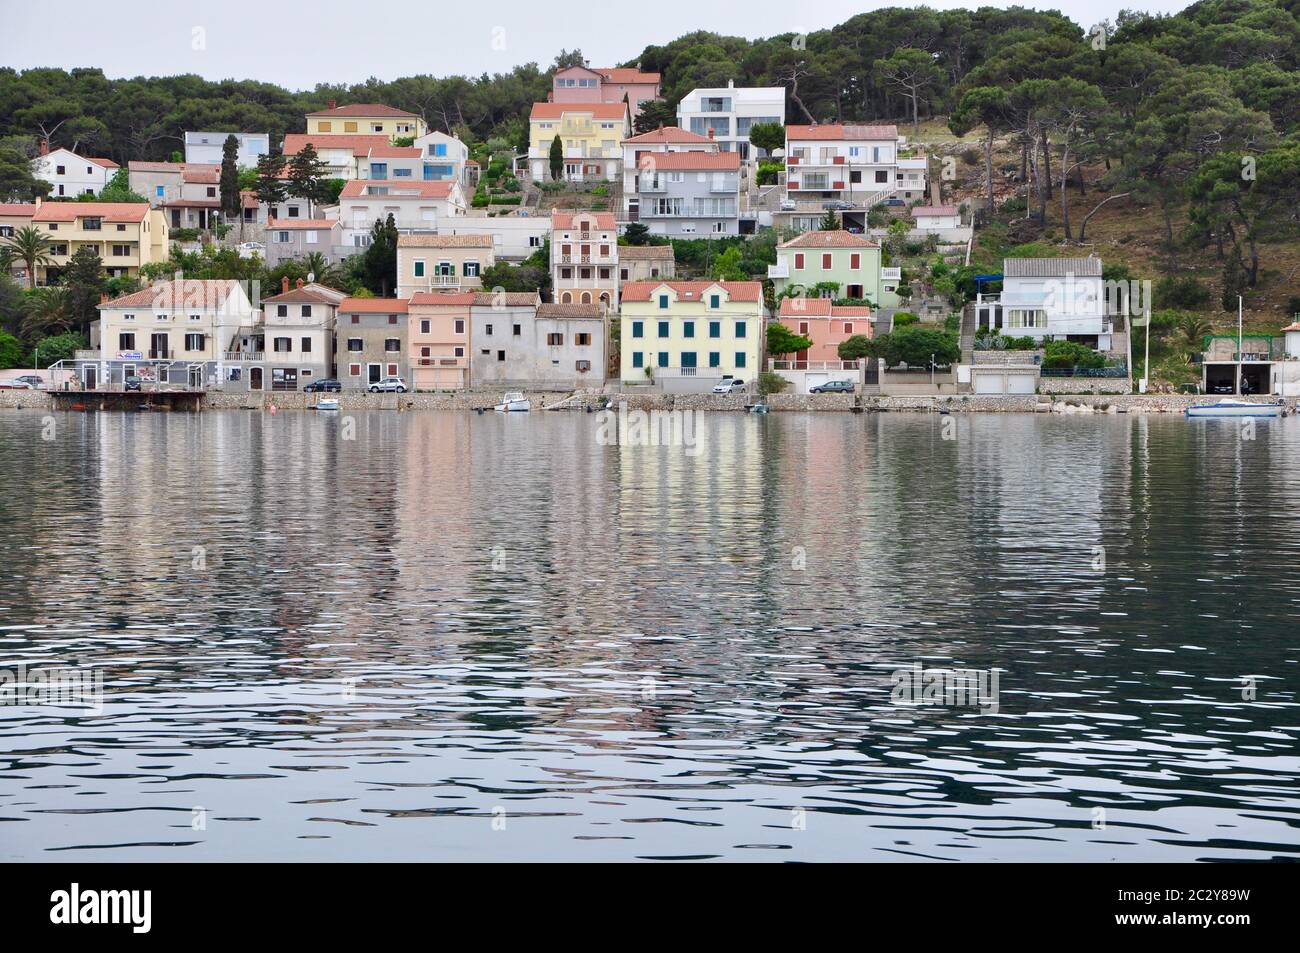 Paesaggio urbano sulla luce del giorno a riflessione nella laguna dell'isola di Lussino, lungomare e porto. Città mediterranea Mali Losinj sulla costa del mare Adriatico Foto Stock